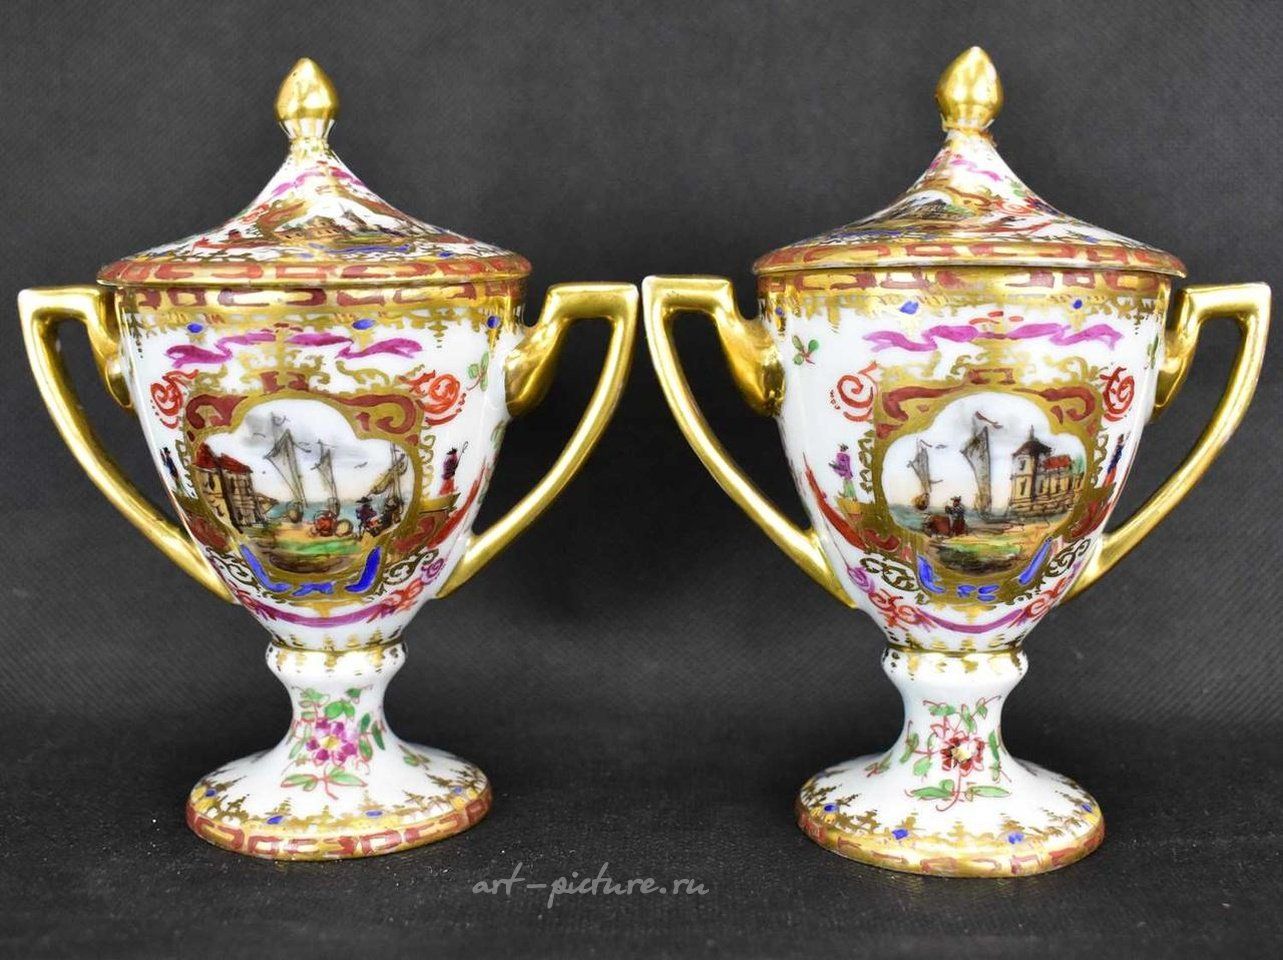 Royal Vienna , Фарфоровая пара ваз 19 века из Вены с ручной росписью и золочением